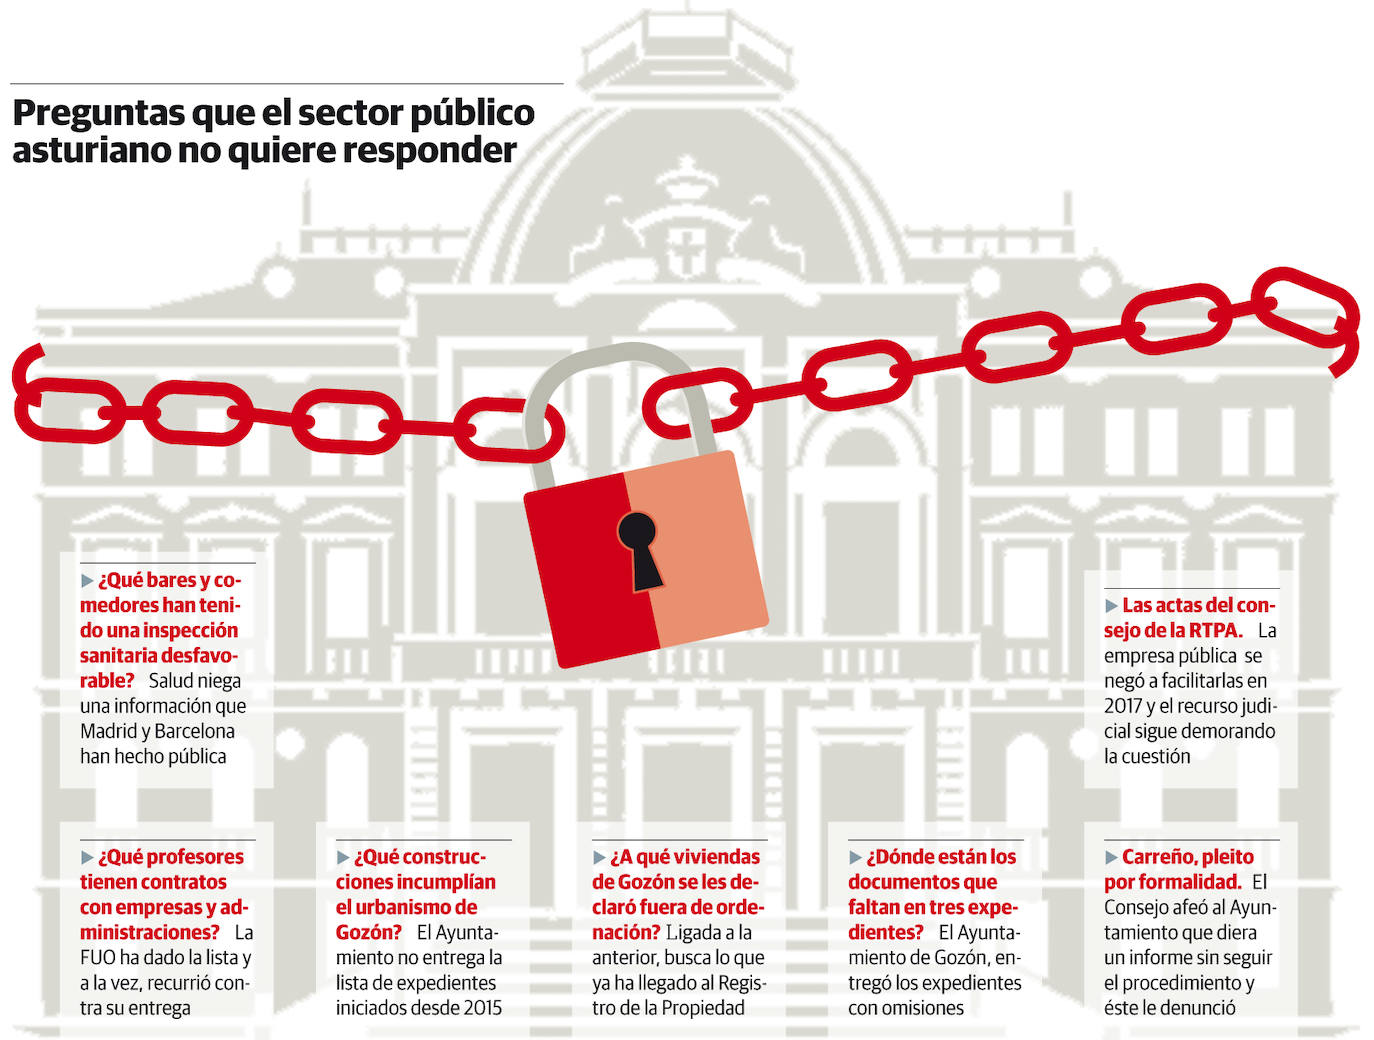 Preguntas que el sector público asturiano no quiere responder 